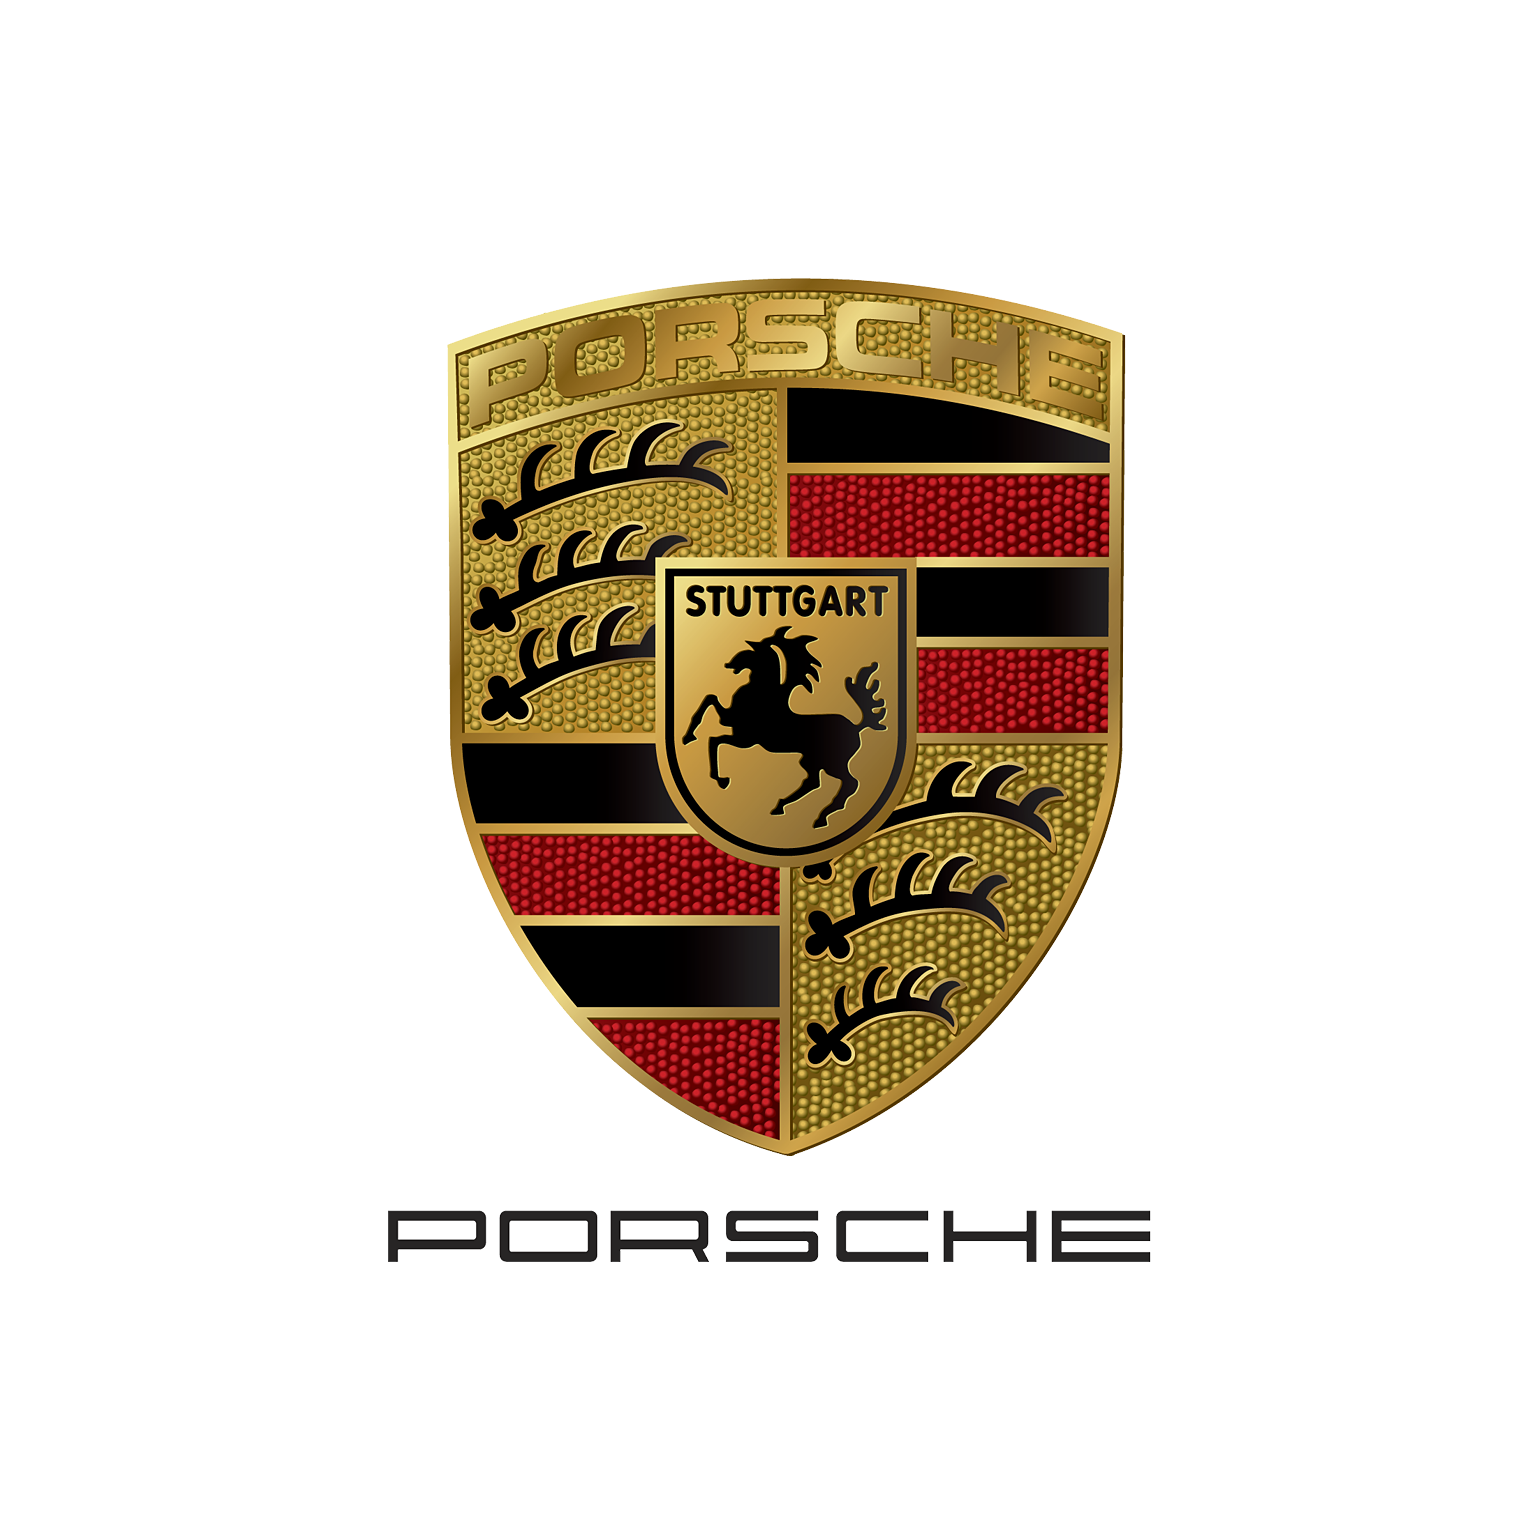 Porsche - sprrawdź wszystkie promocje